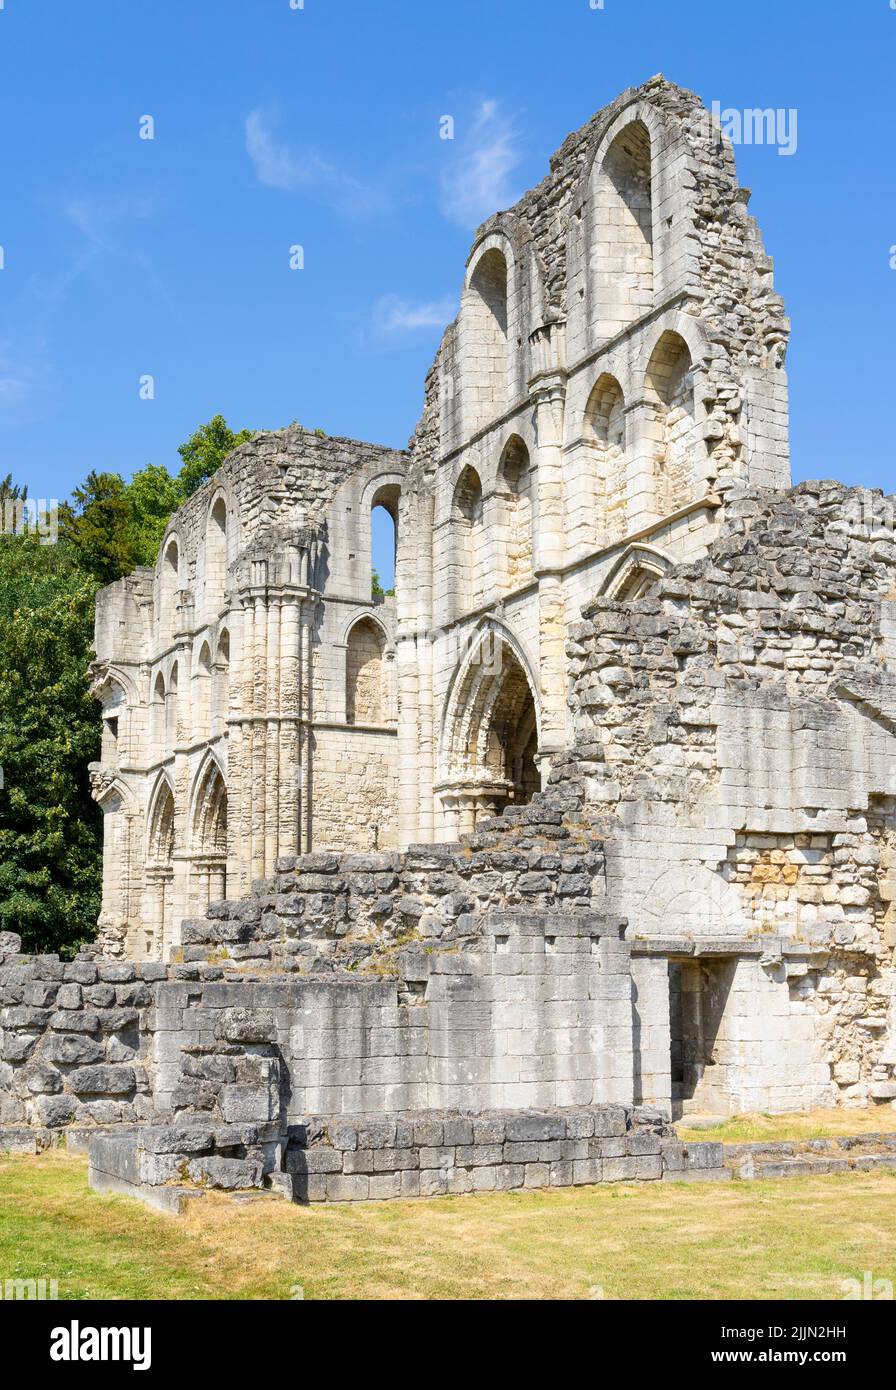 Roche Abbey rovine di un monastero cistercense inglese vicino a Maltby e Rotherham South Yorkshire Inghilterra Regno Unito GB Europa Foto Stock